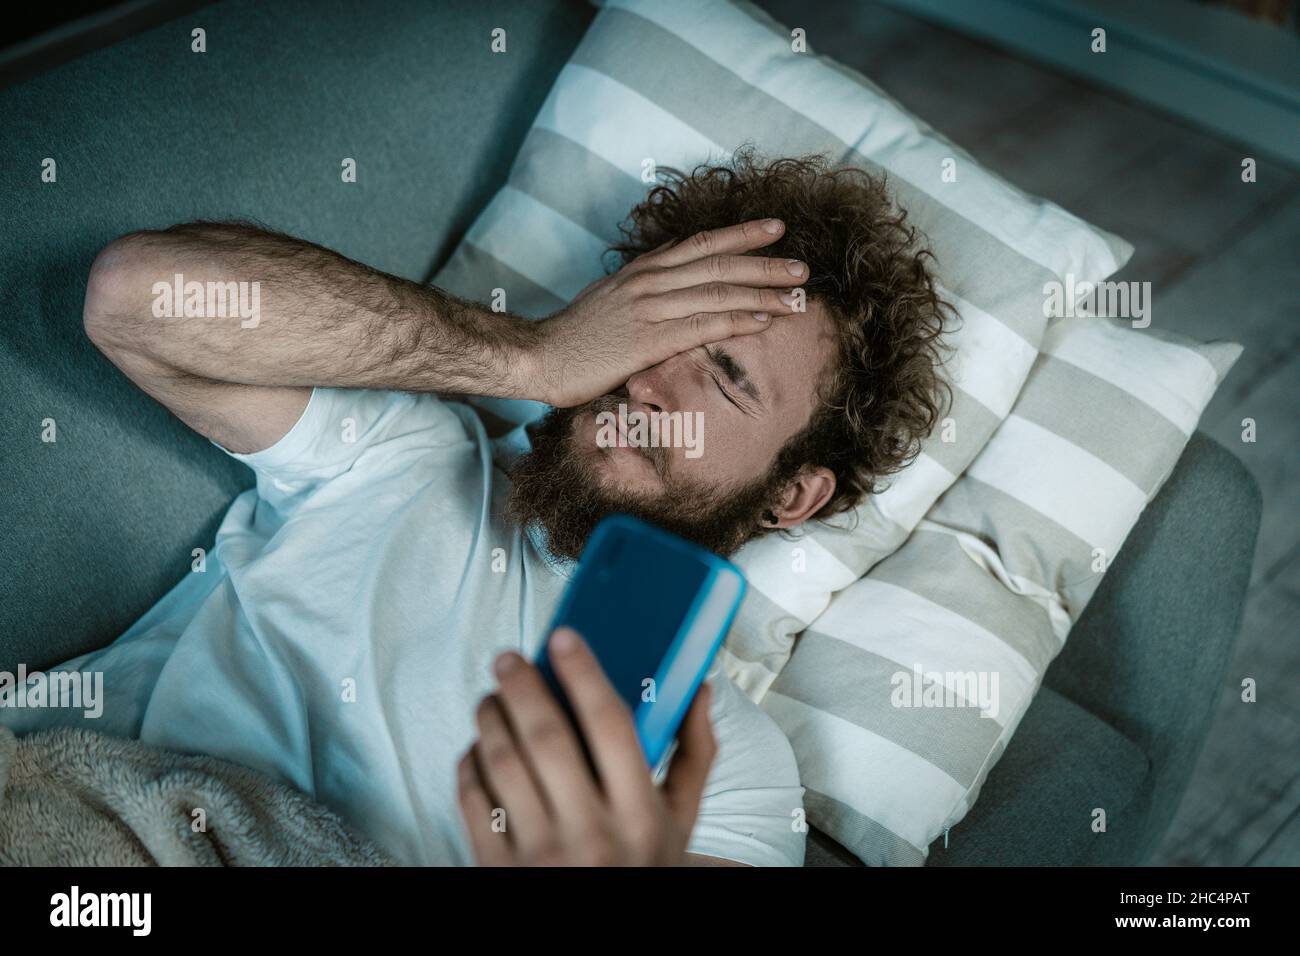 Sleepy Guy désactive l'alarme sur le téléphone.Caucasien Guy se trouve sur le lit et couvre les yeux il a un smartphone dans une main.Appel du matin, alarme du matin, réveil tôt.Gros plan.Arrière-plan de la chambre.Photo de haute qualité Banque D'Images